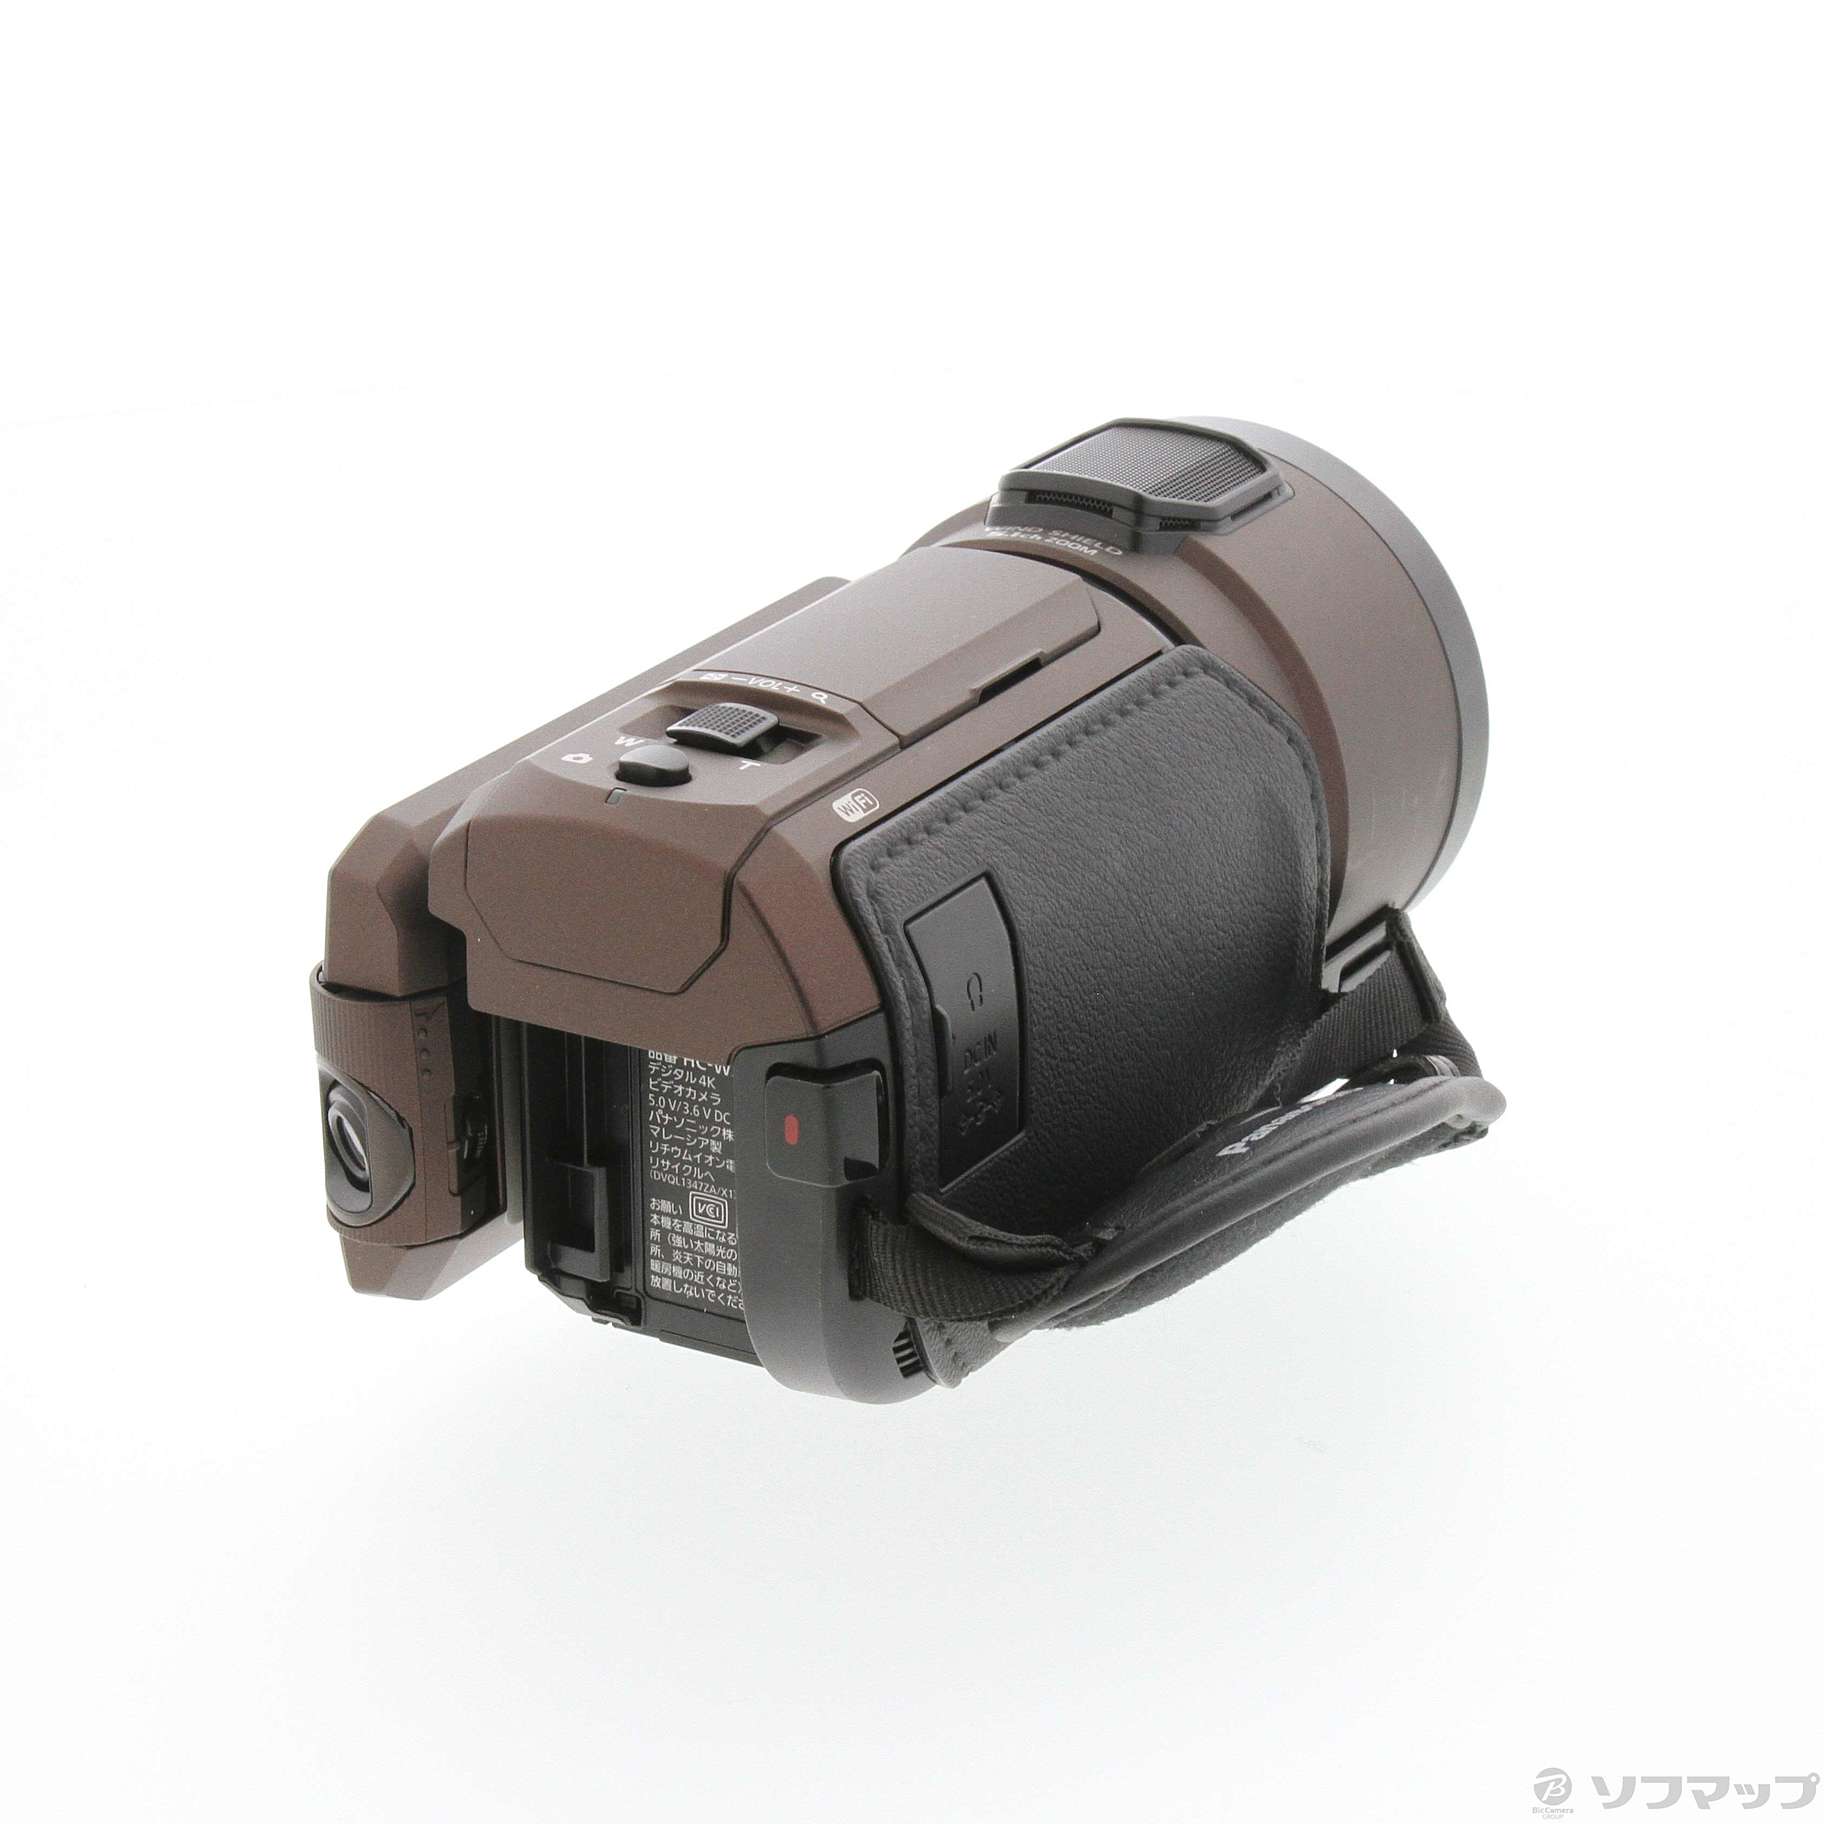 【新品】Panasonic 4k ビデオカメラ HC-WX2M-T ブラウン